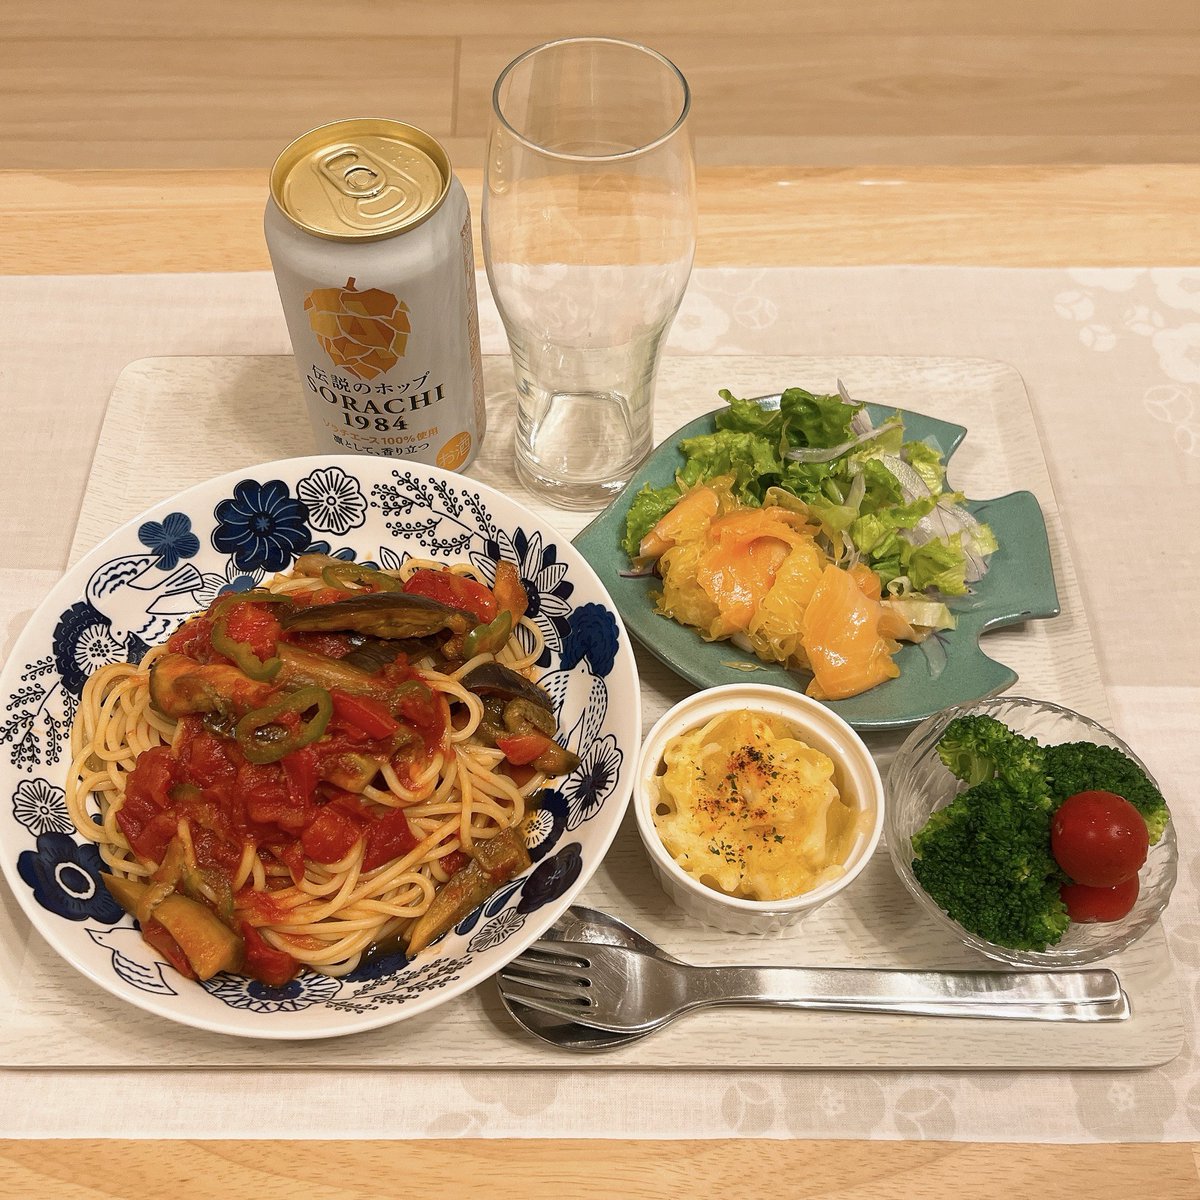 今日の夕ごはん。
茄子とトマトのスパゲッティー。
サーモスと甘夏のサラダ。
じゃがいものマヨチーズ焼き。
ブロッコリー＆ミニトマト。

#おうちごはん #自炊 #夕ごはん #手作りごはん #料理記録 #晩酌 #Twitter料理部 #homecooking #Dinner